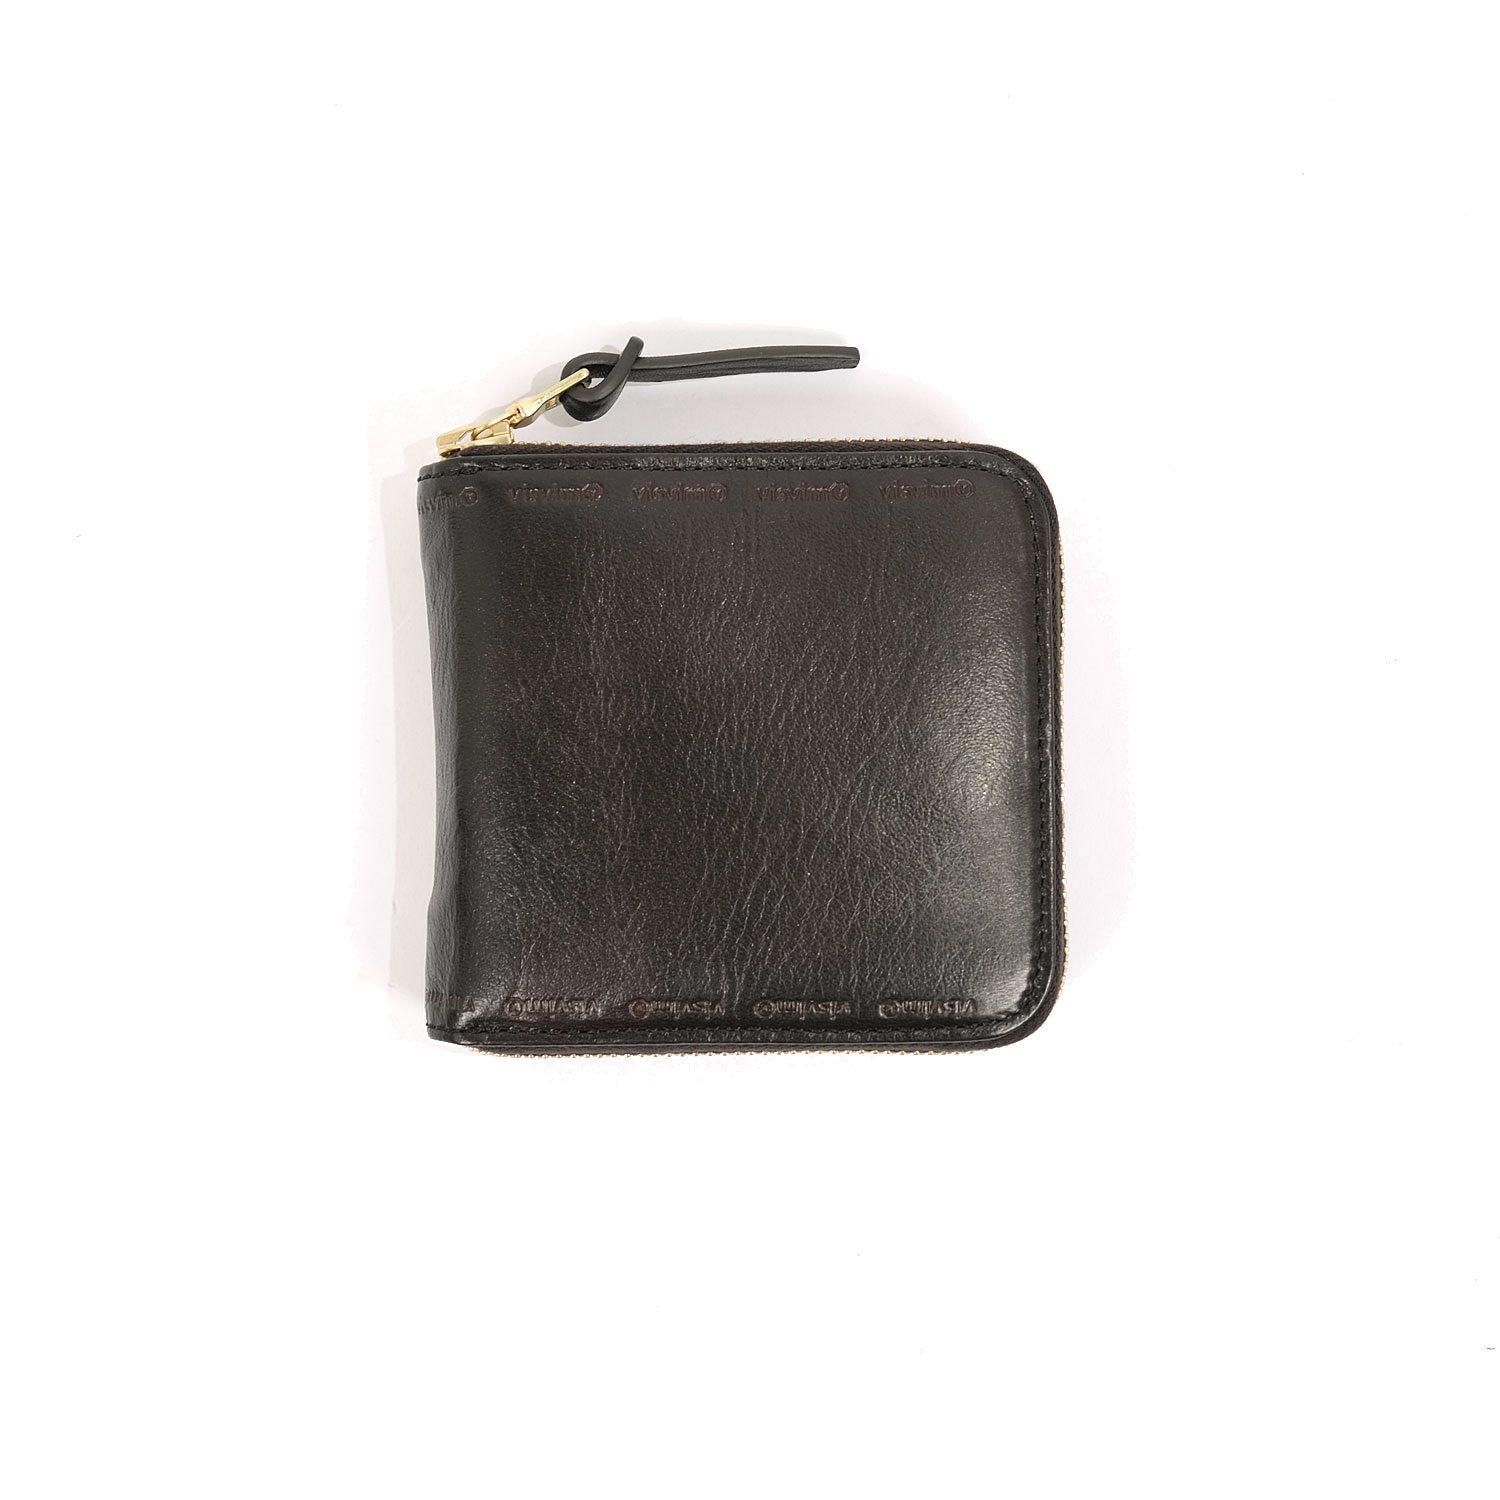 Visvim Leather Bi-Fold Wallet | FIRMAMENT - Berlin Renaissance